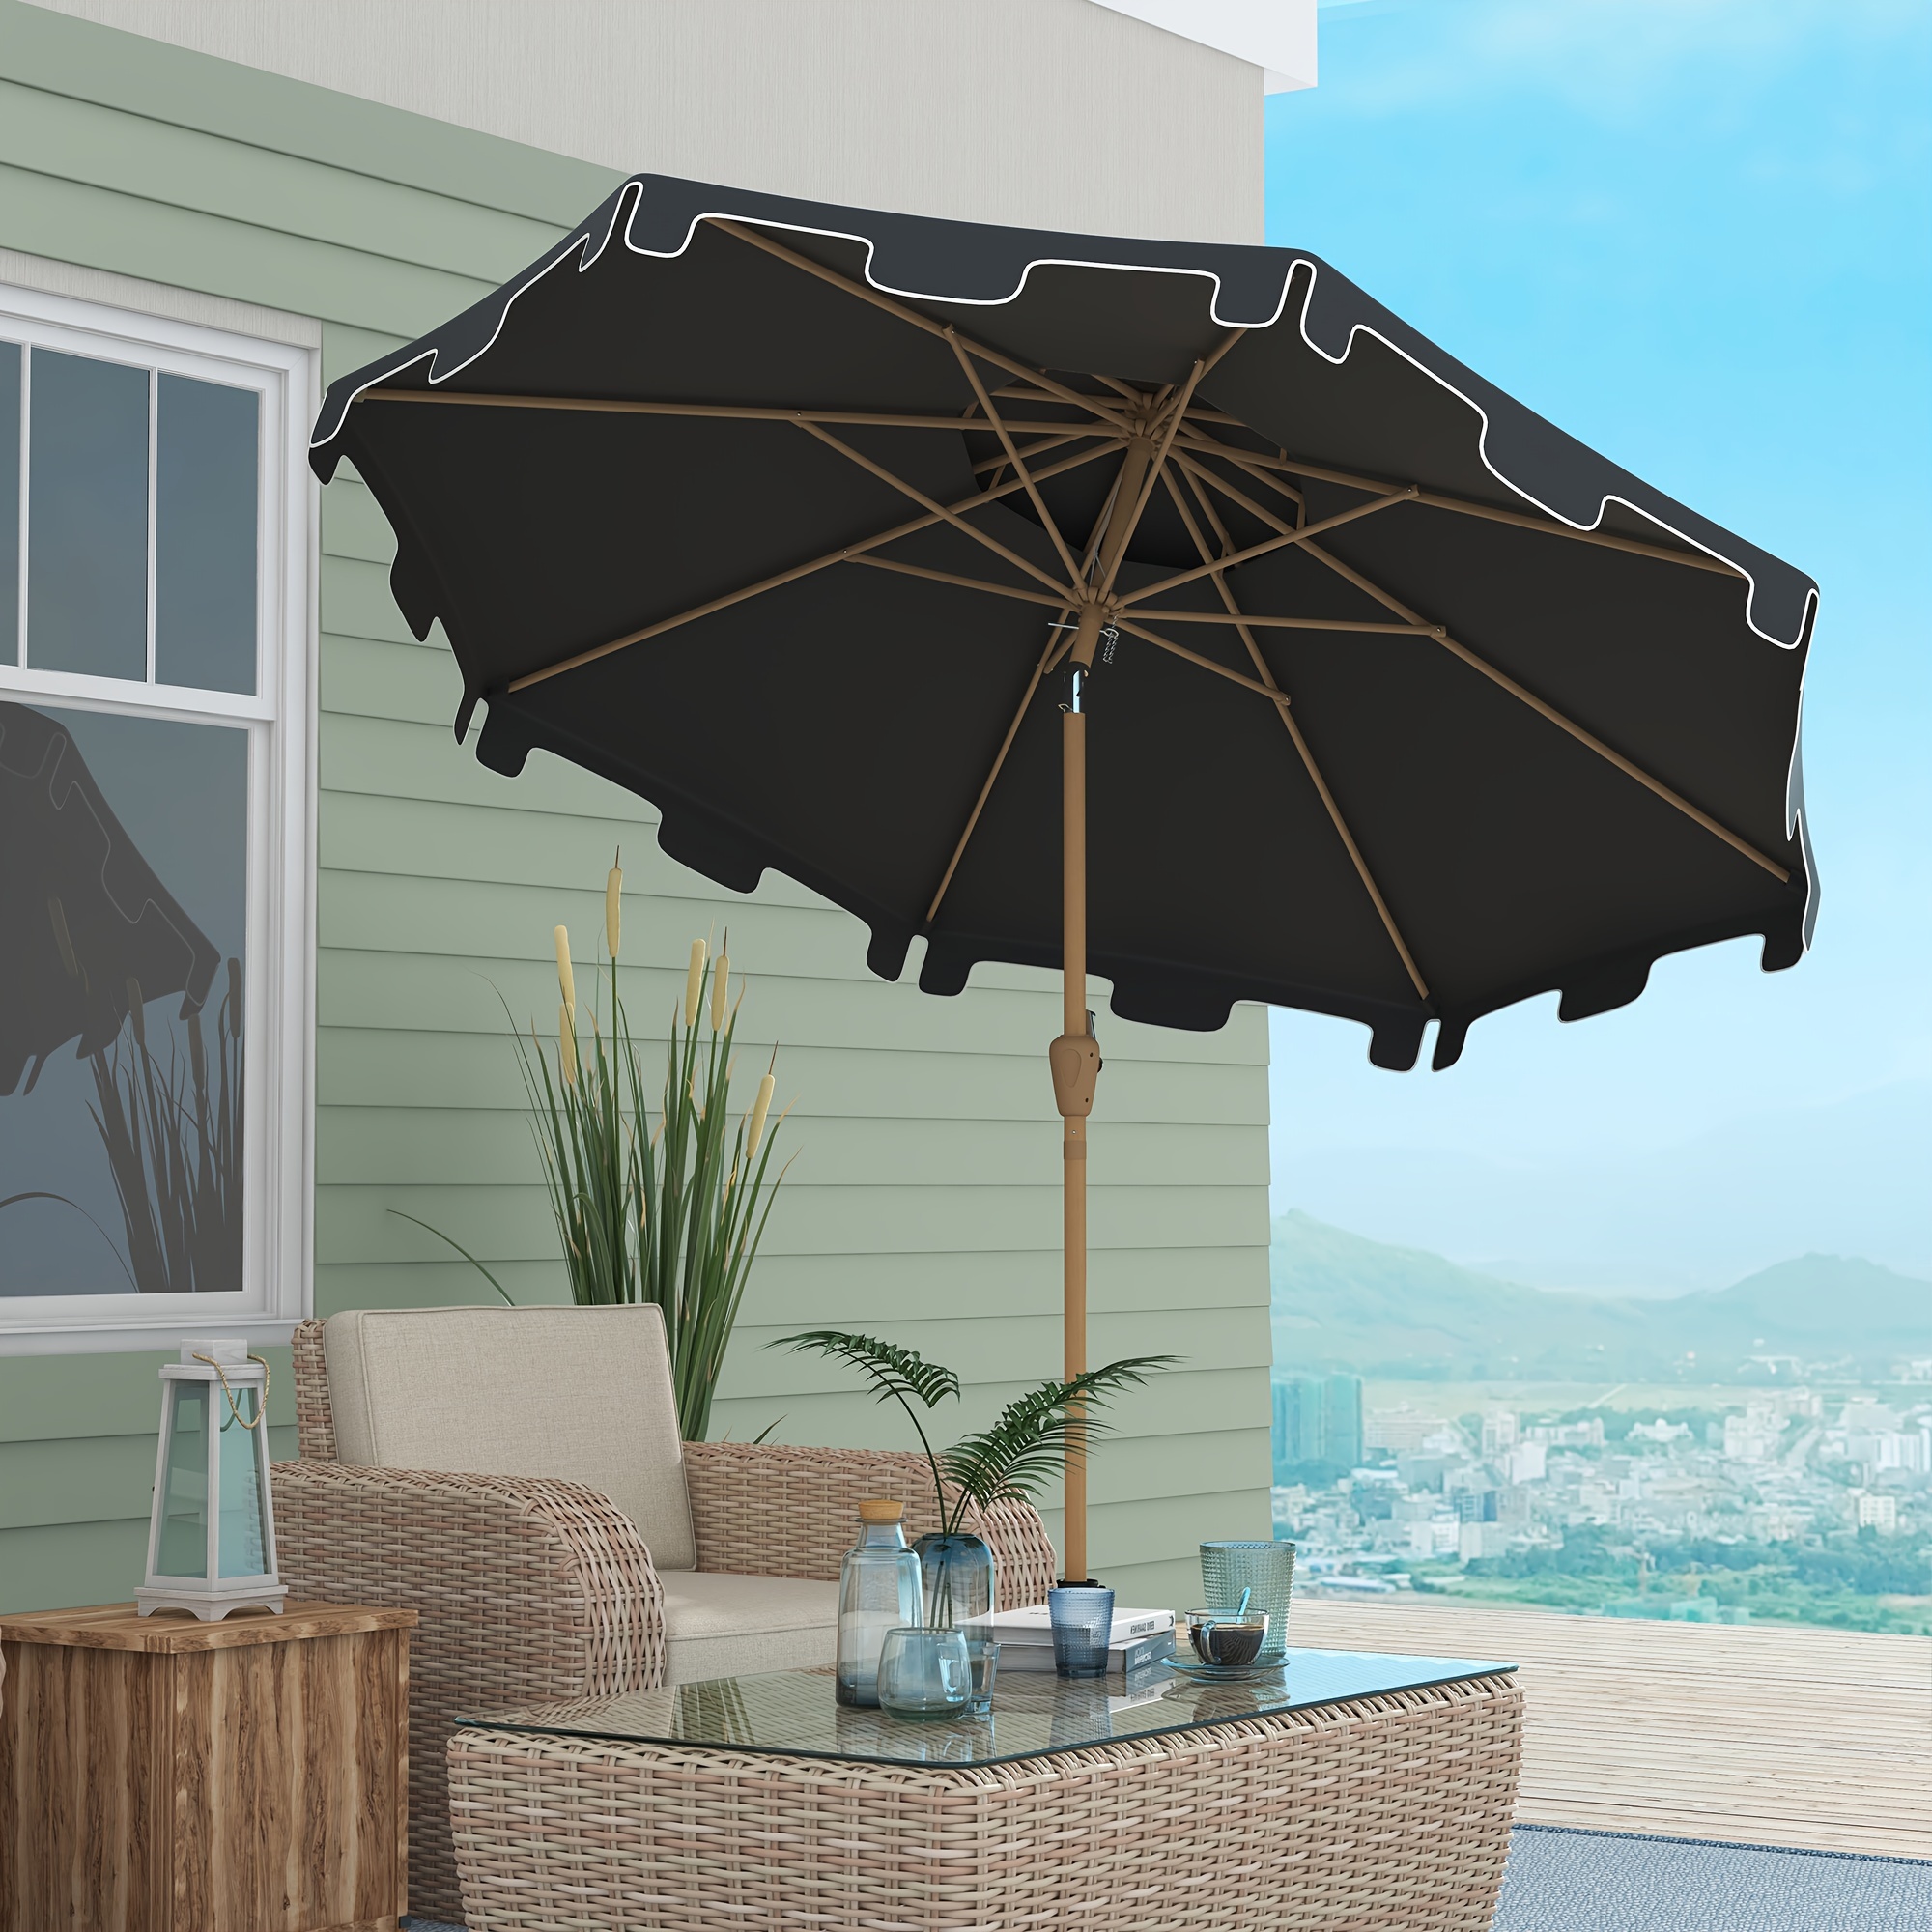 

Outsunny 9' Patio Umbrella With Push Button Tilt And Crank, Outdoor Market Table Umbrella With 8 Ribs, For Garden, Deck, Pool, Dark Gray